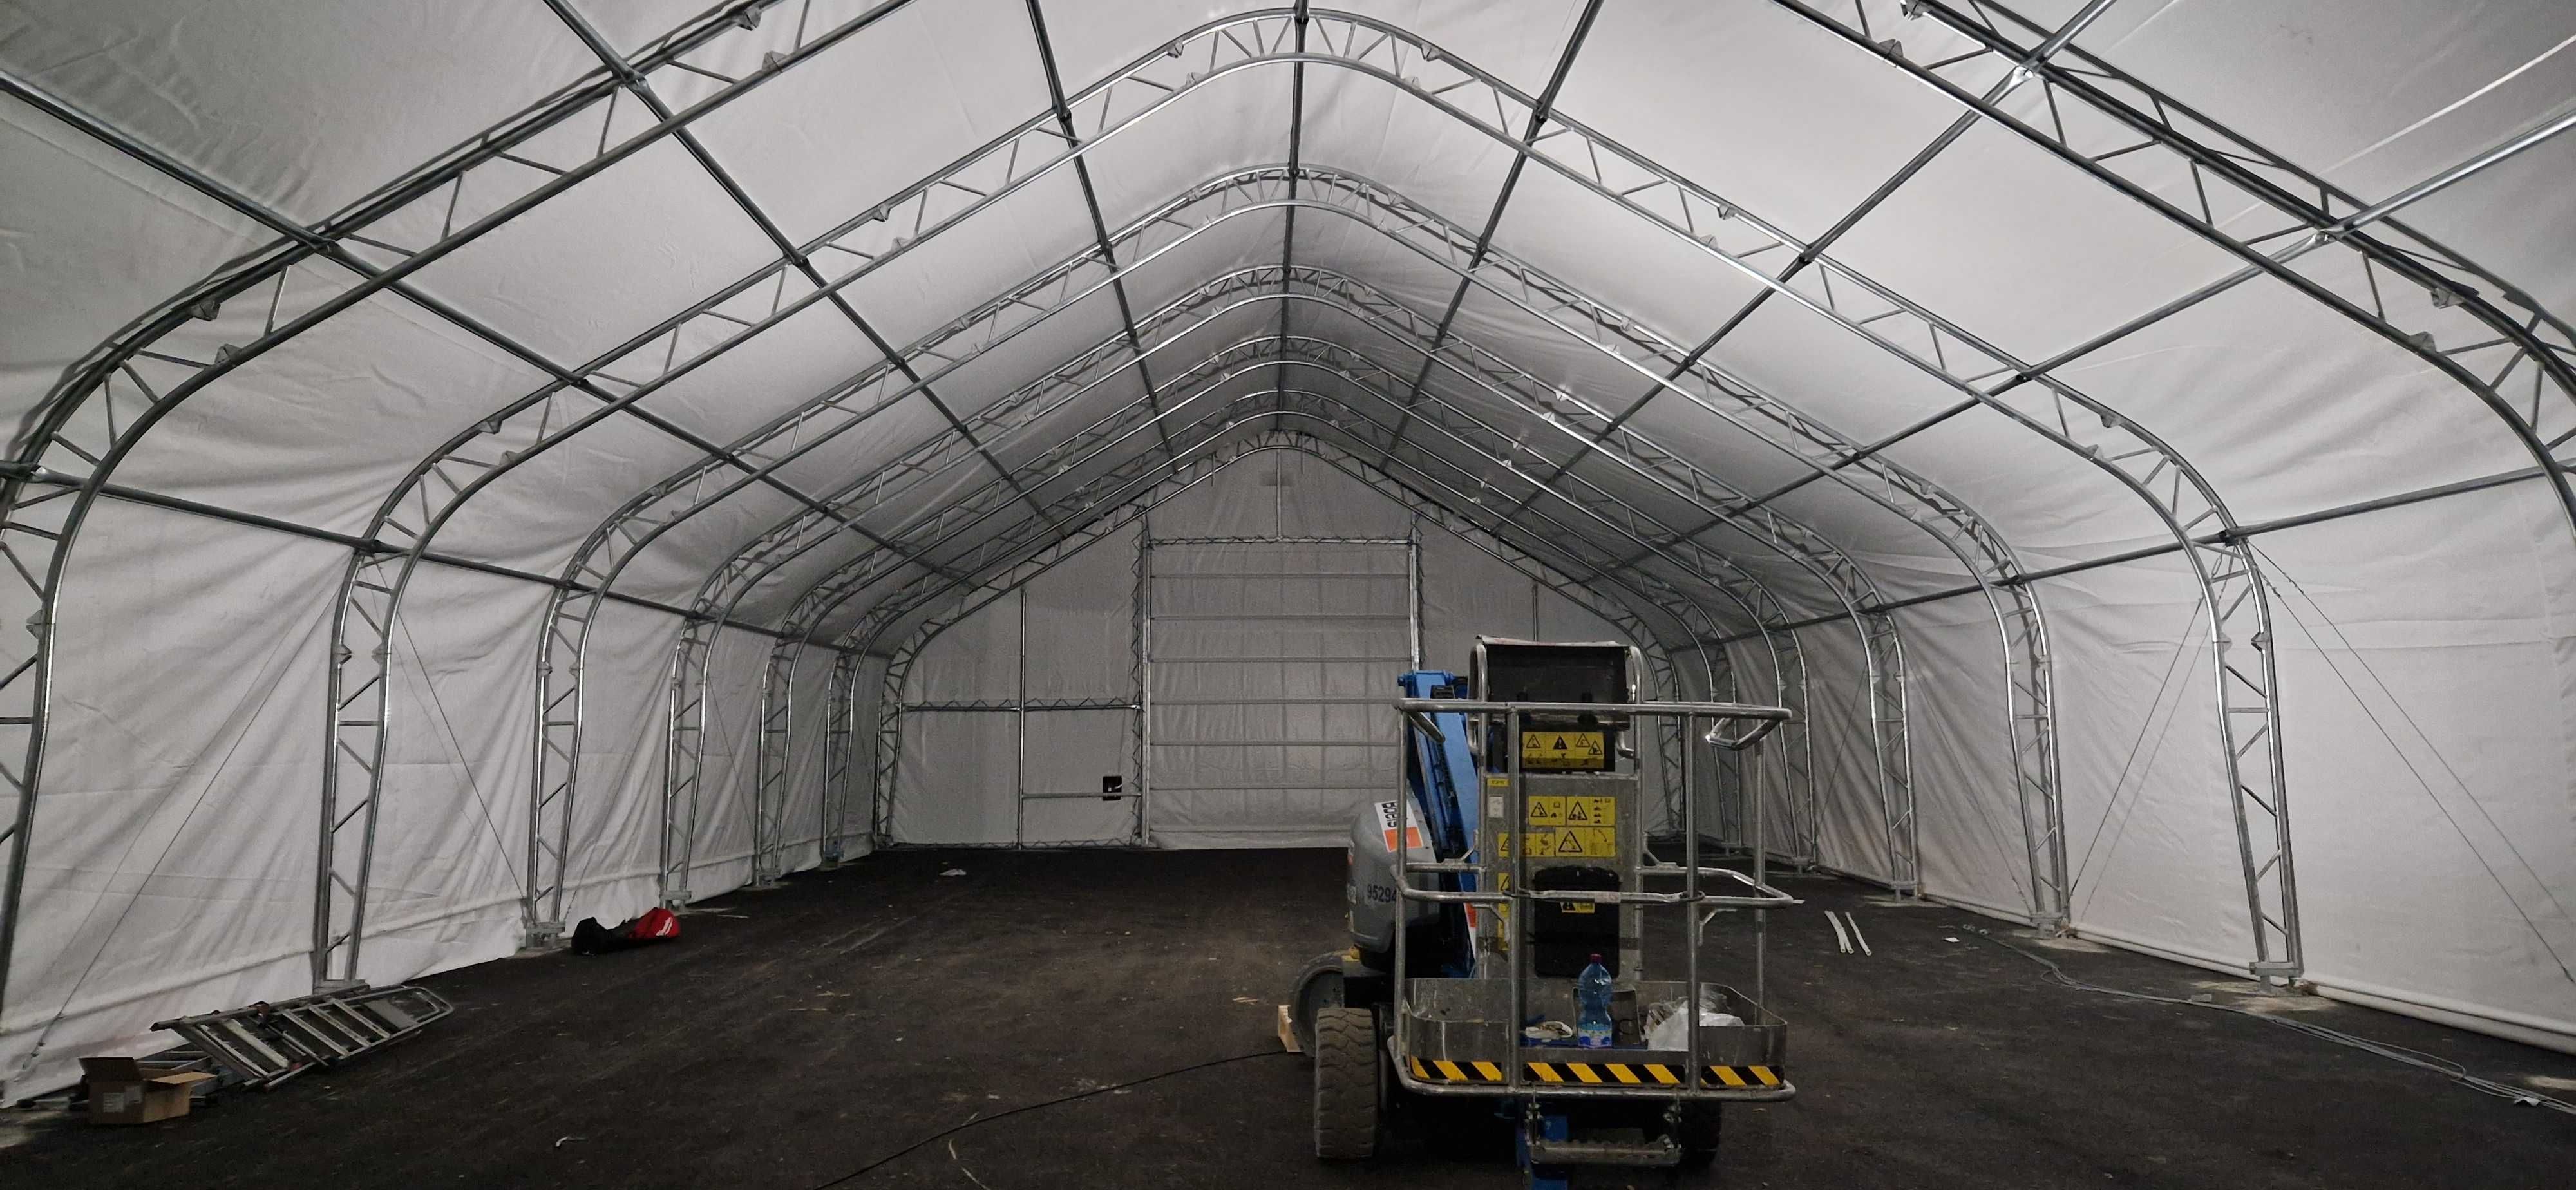 Garaż przenośny hala namiotowa namiot hangar na kampera 6x12x5 m